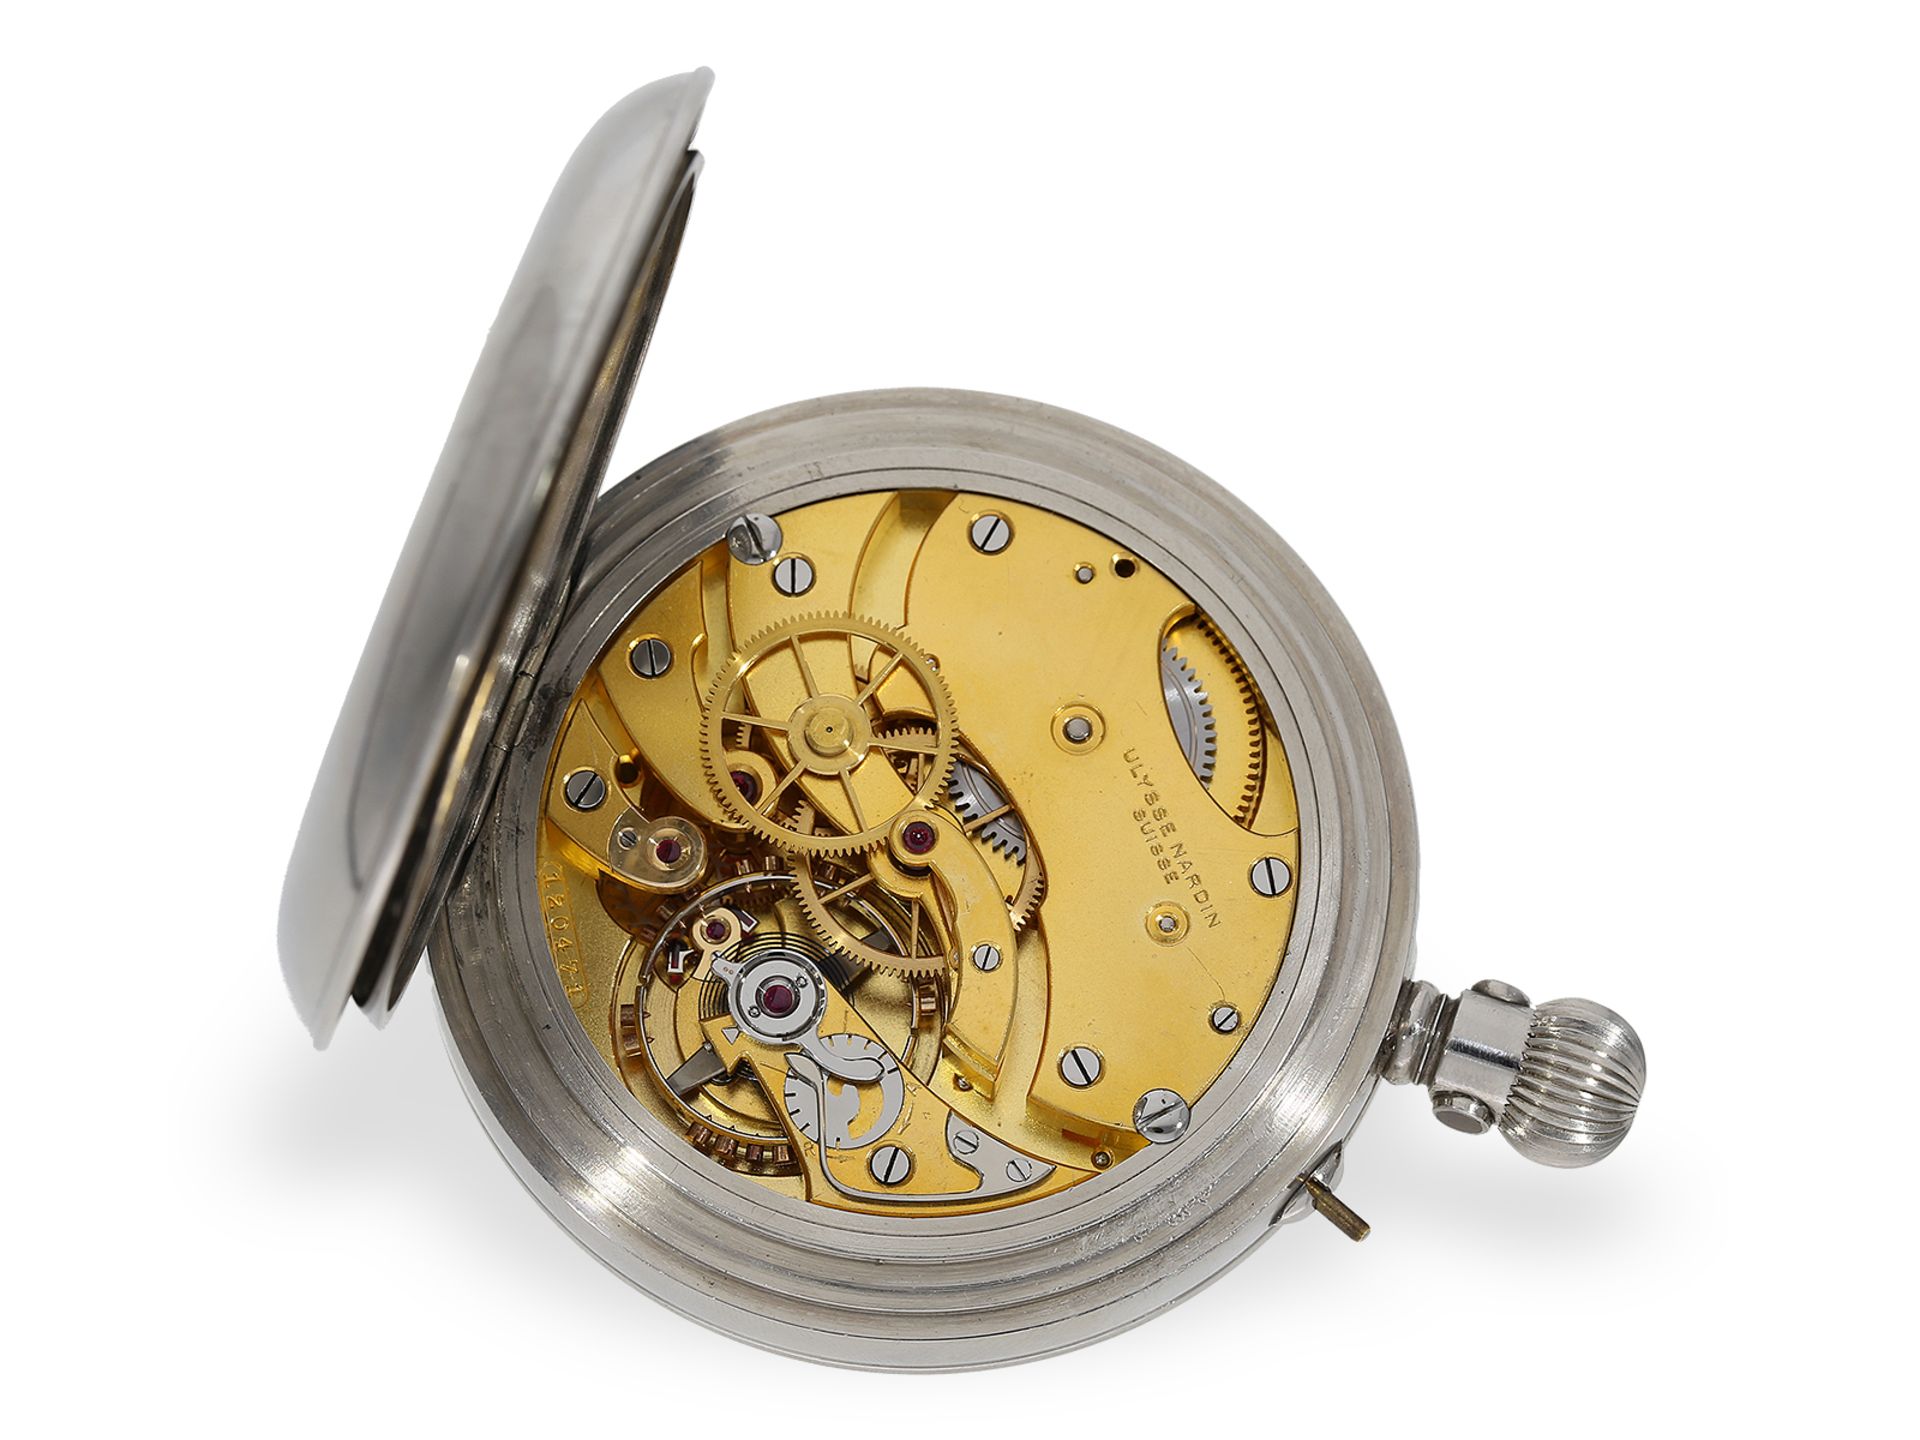 Hervorragend erhaltenes, nahezu neuwertiges Beobachtungschronometer, Ulysse Nardin für das englische - Bild 3 aus 7